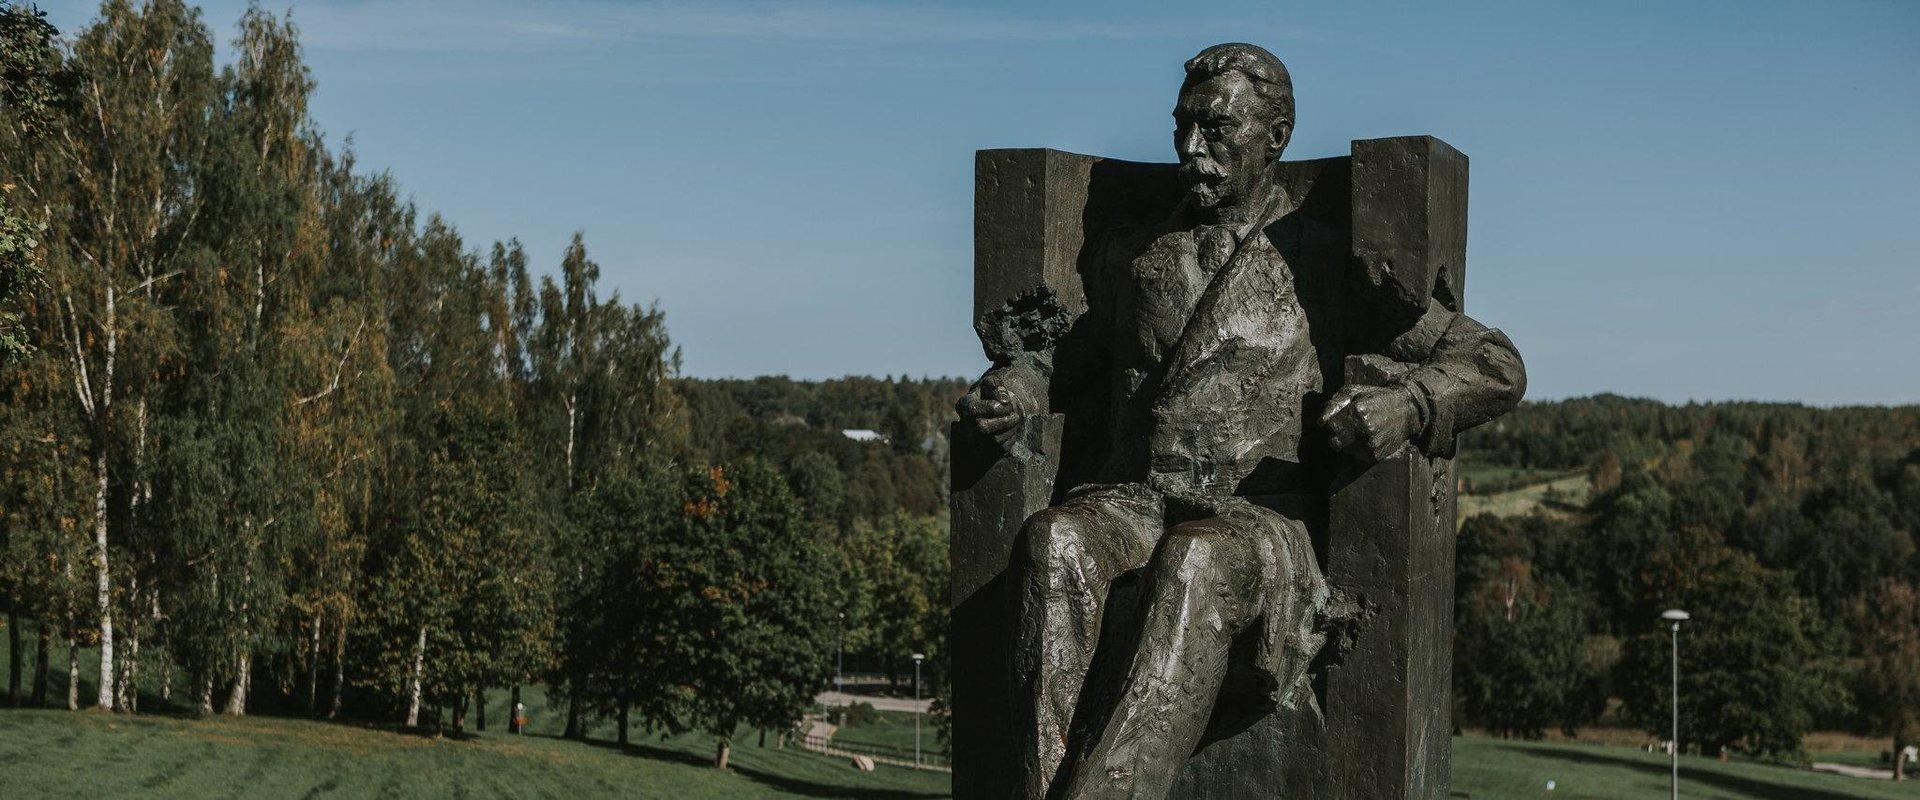 August Kitzbergi monument